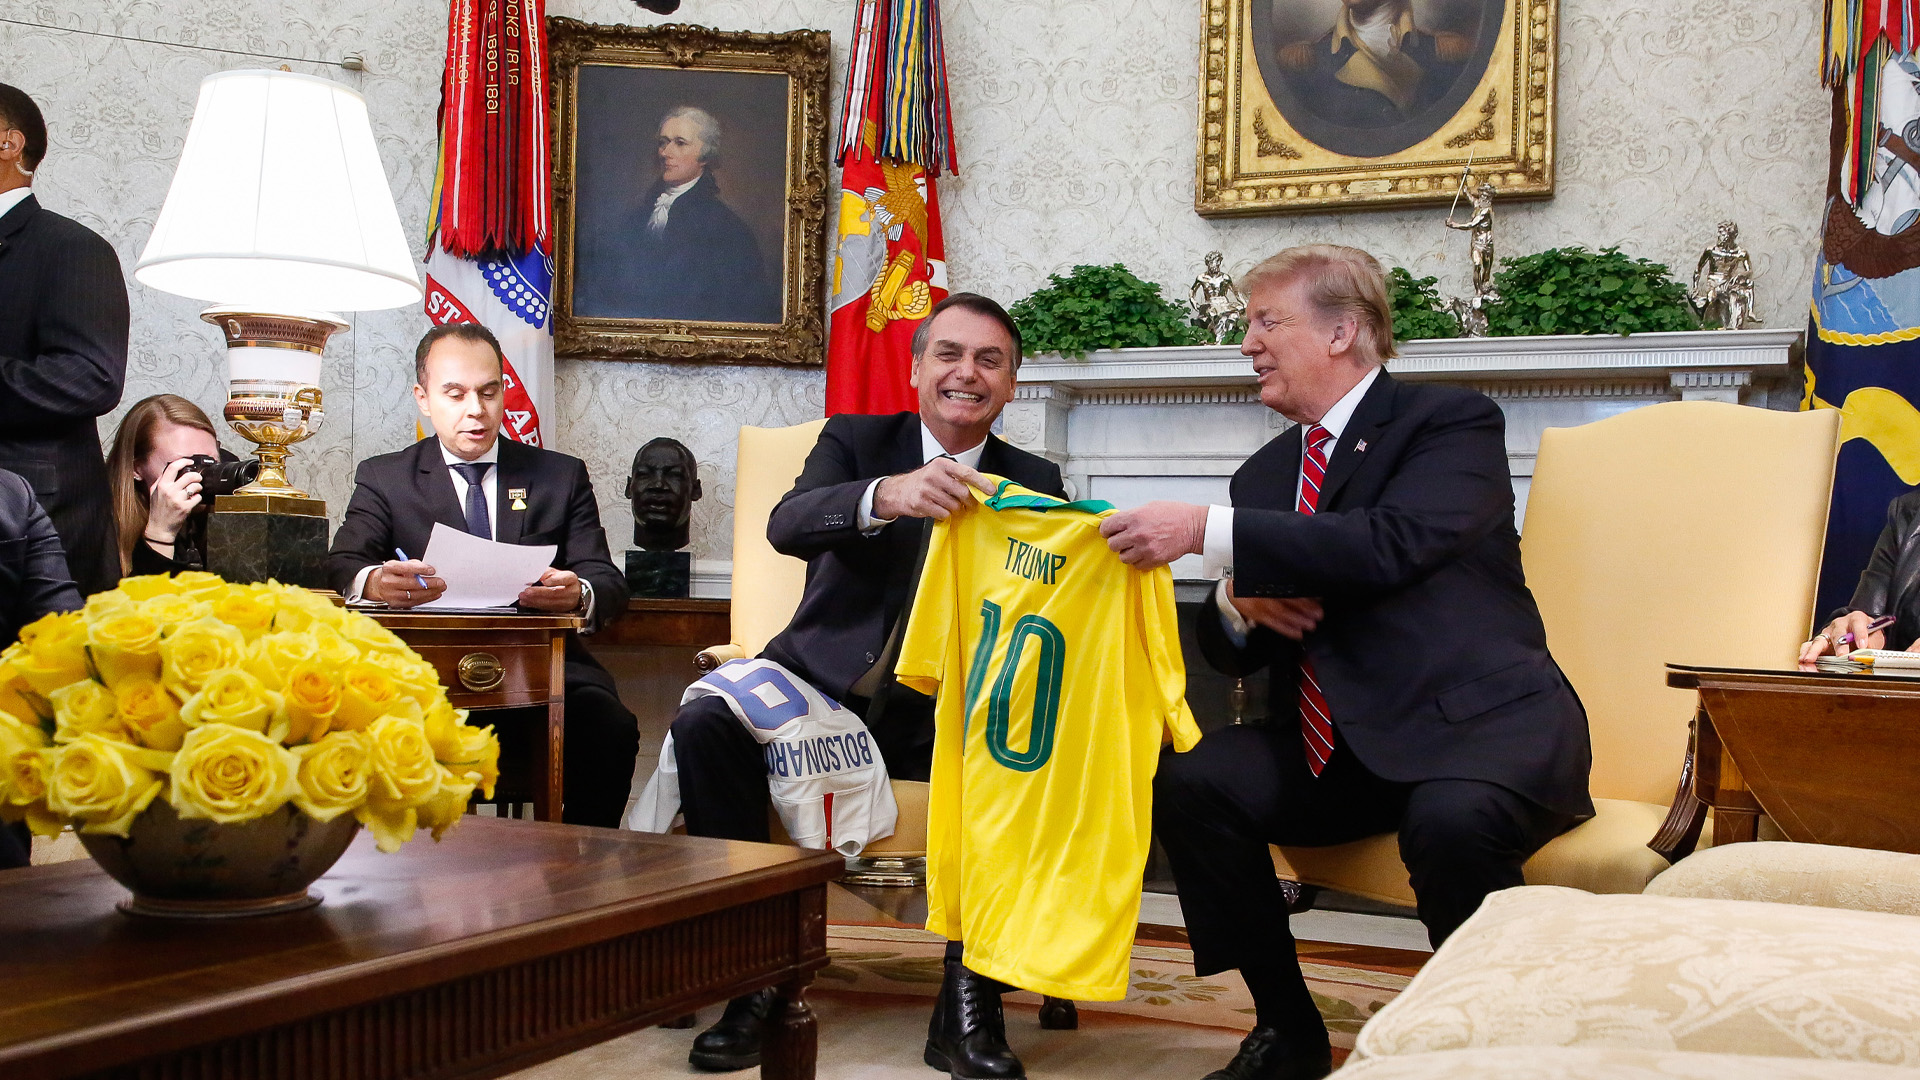 Lejos de los mandatos de la diplomacia de su país, Trump basó las relaciones bilaterales de Estados Unidos en vínculos personales y familiares, como los que mantuvo con Bolsonaro. Foto: Agencia Brasil.